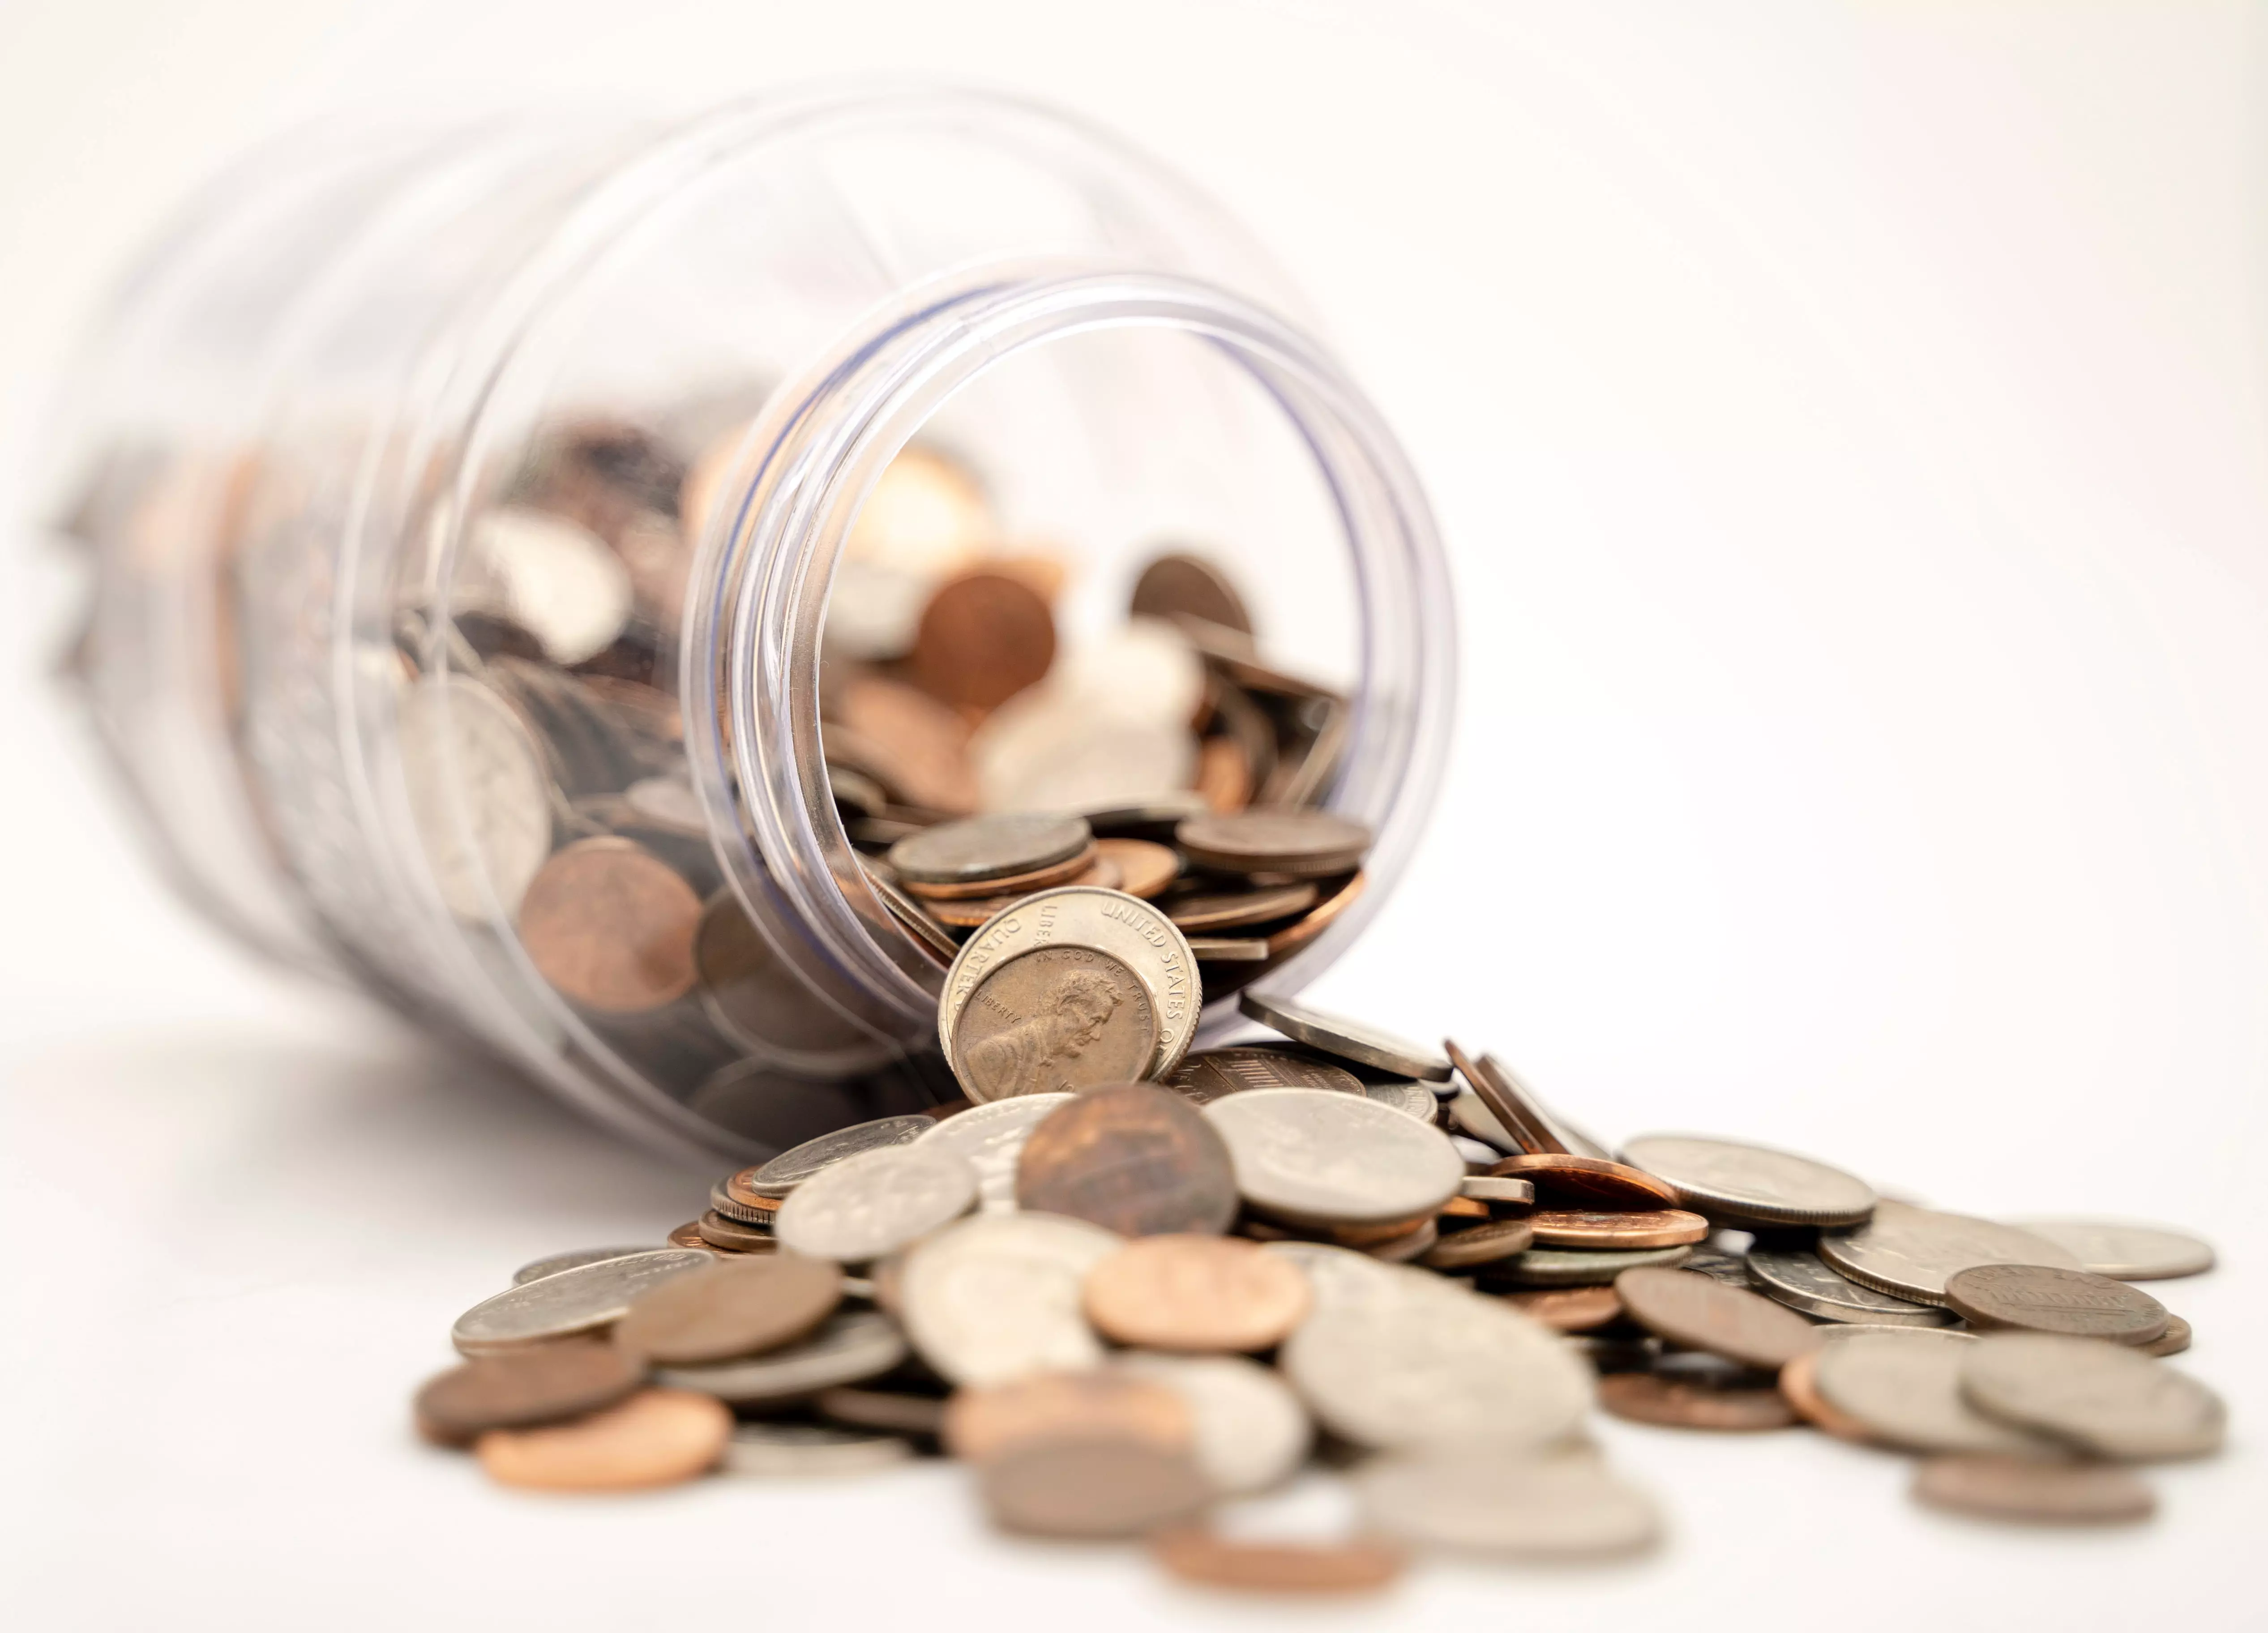 gekippter Glasbehälter mit teilweise herausgeschütteten Kleingeldmünzen